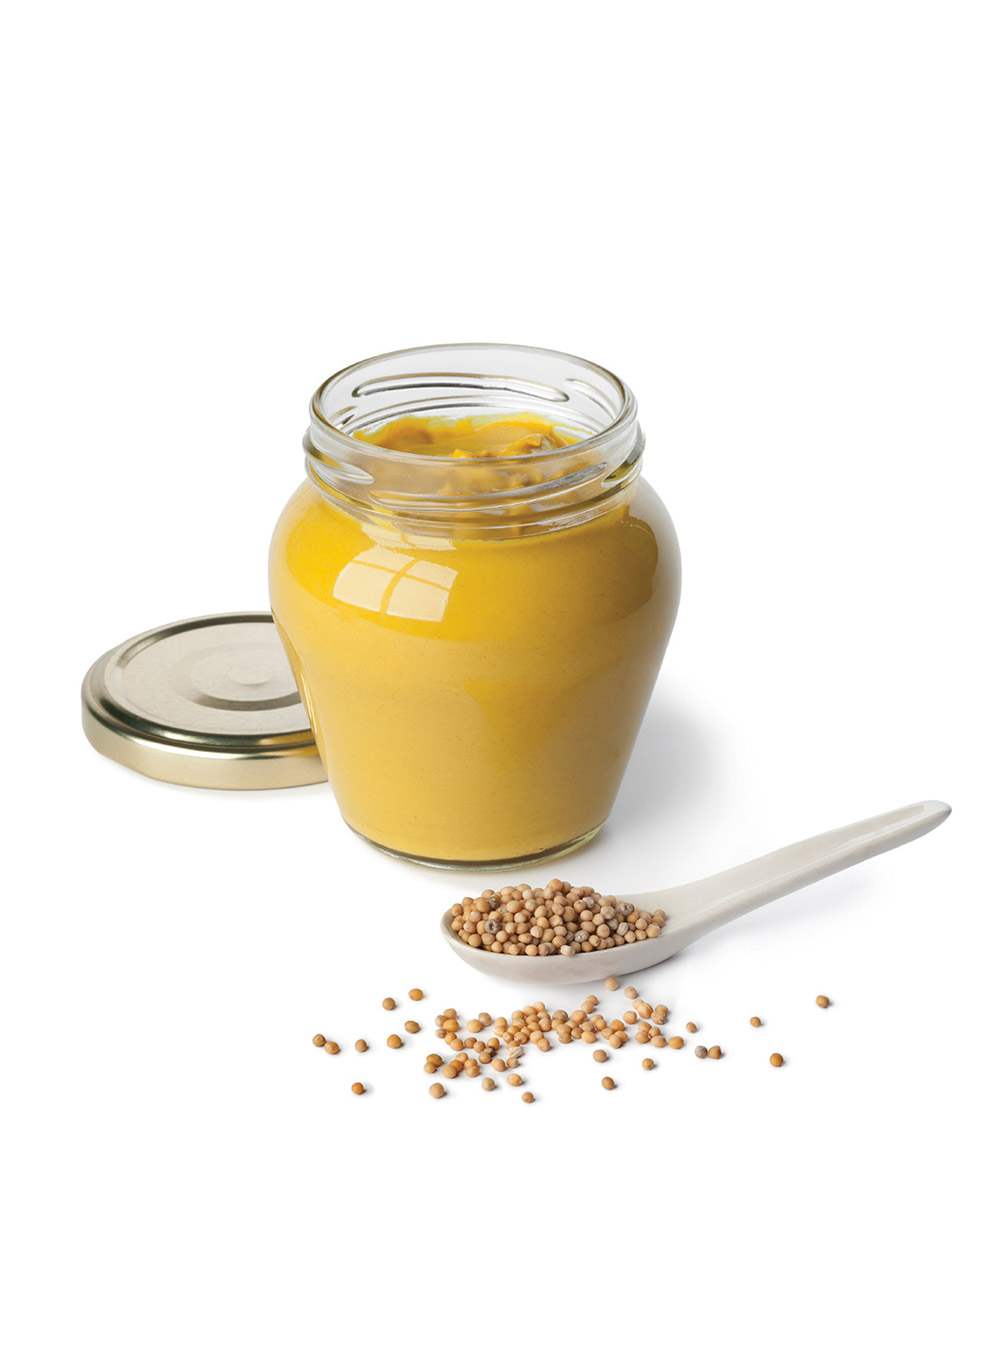 Sauce moutarde au miel : recette de sauce à la moutarde et au miel